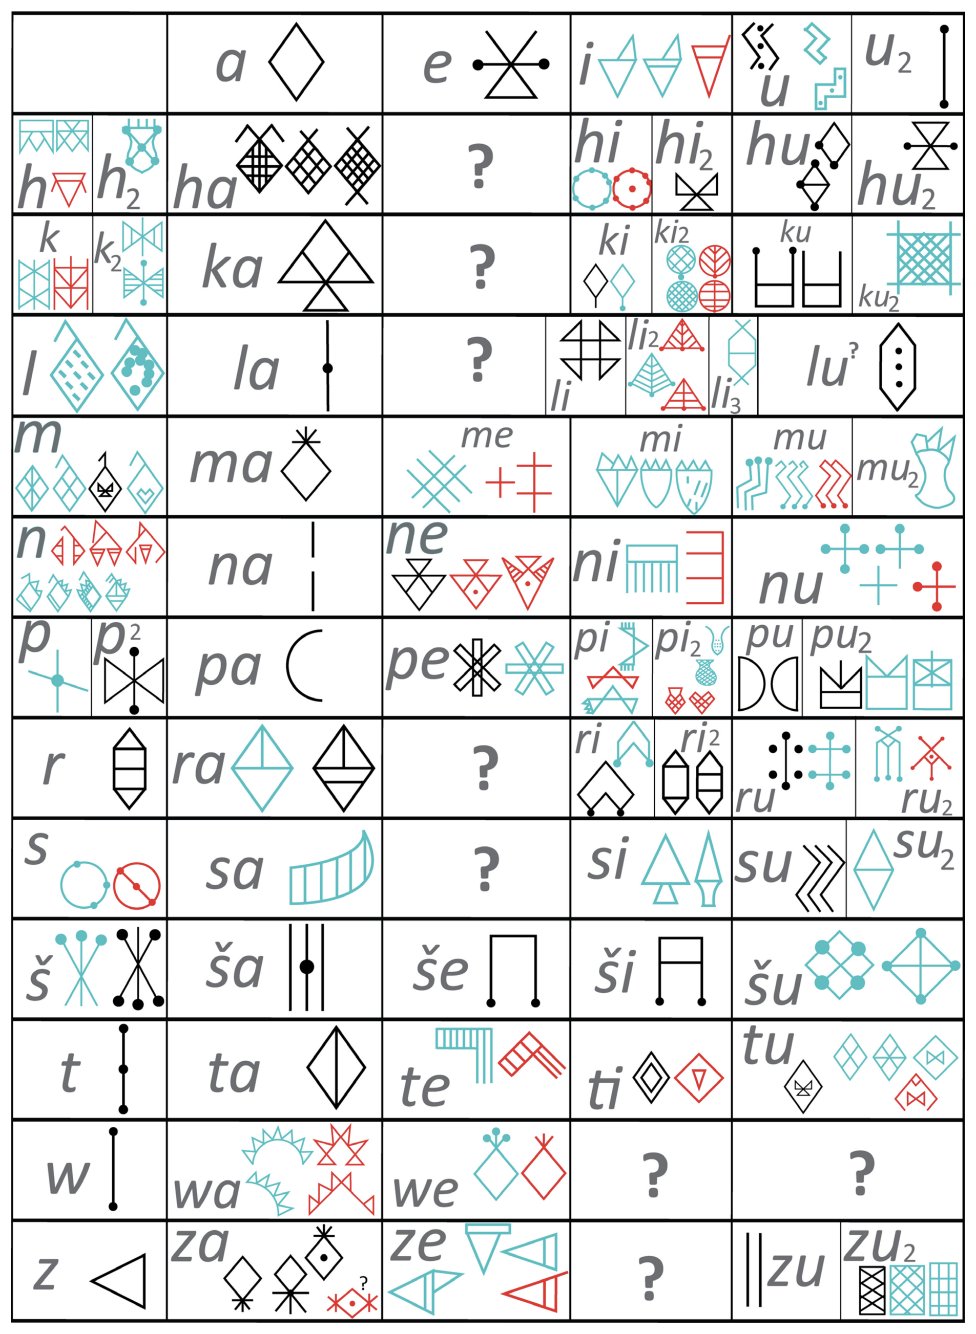 Reixa dos 72 signos alfa-silábicos descifrados nos que se basea o sistema de transliteración do Elamita Lineal. Para cada signo móstranse as variantes gráficas máis comúns. Os sinais azuis están atestados no suroeste de Irán, os vermellos no sueste de Irán. Os sinais negros son comúns a ambas áreas. F. Desset